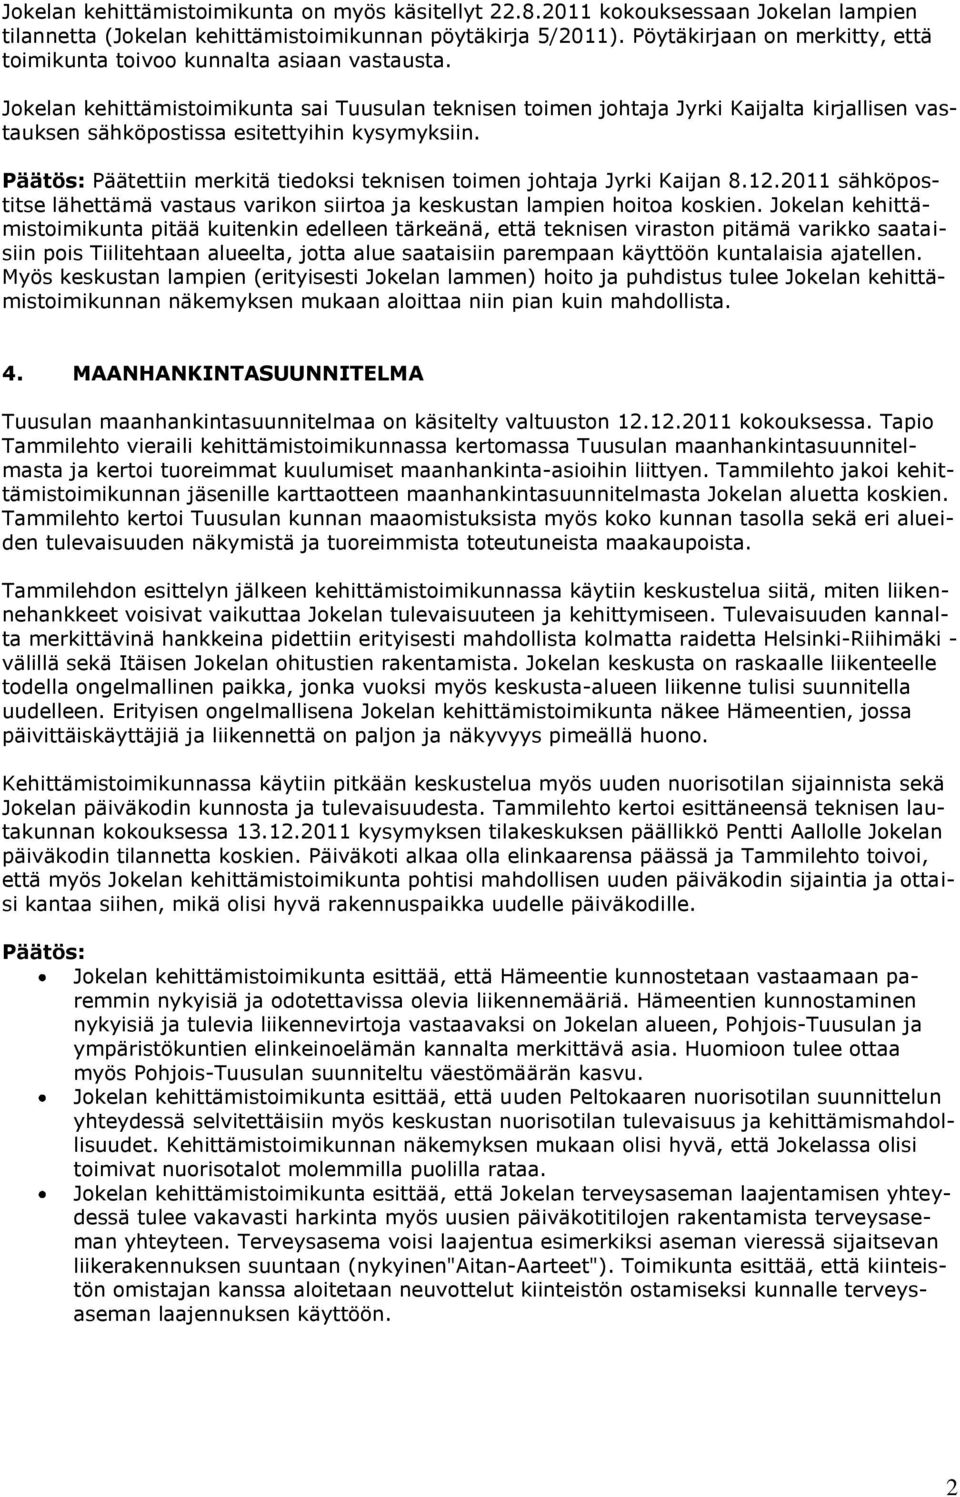 Jokelan kehittämistoimikunta sai Tuusulan teknisen toimen johtaja Jyrki Kaijalta kirjallisen vastauksen sähköpostissa esitettyihin kysymyksiin.